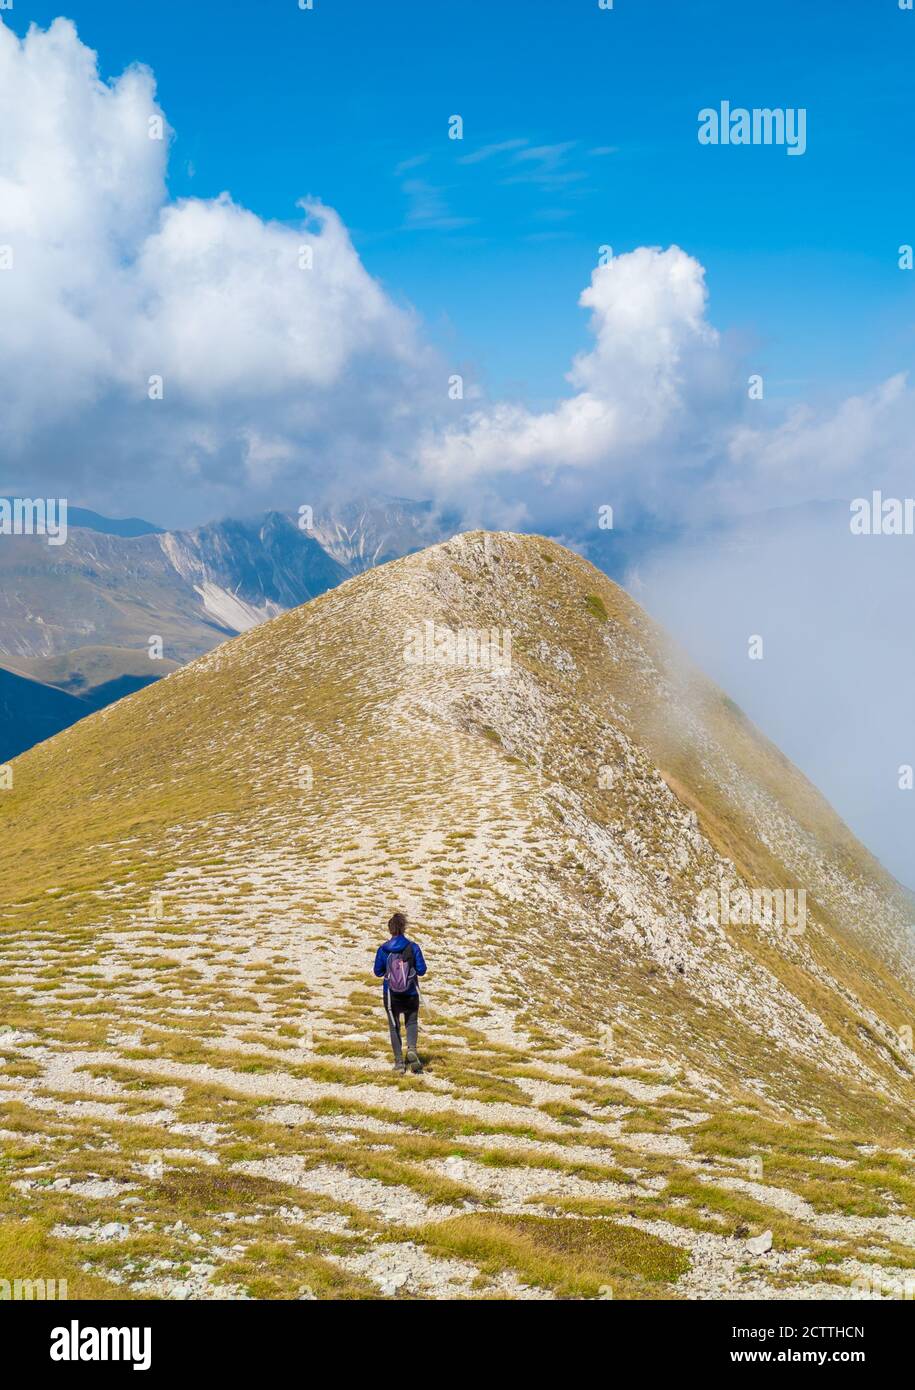 Monte Vettore (Italie) - le sommet du paysage du Mont Vettore, l'un des plus hauts sommets des Apennines avec ses 2,476 mètres. Région des Marches. Banque D'Images